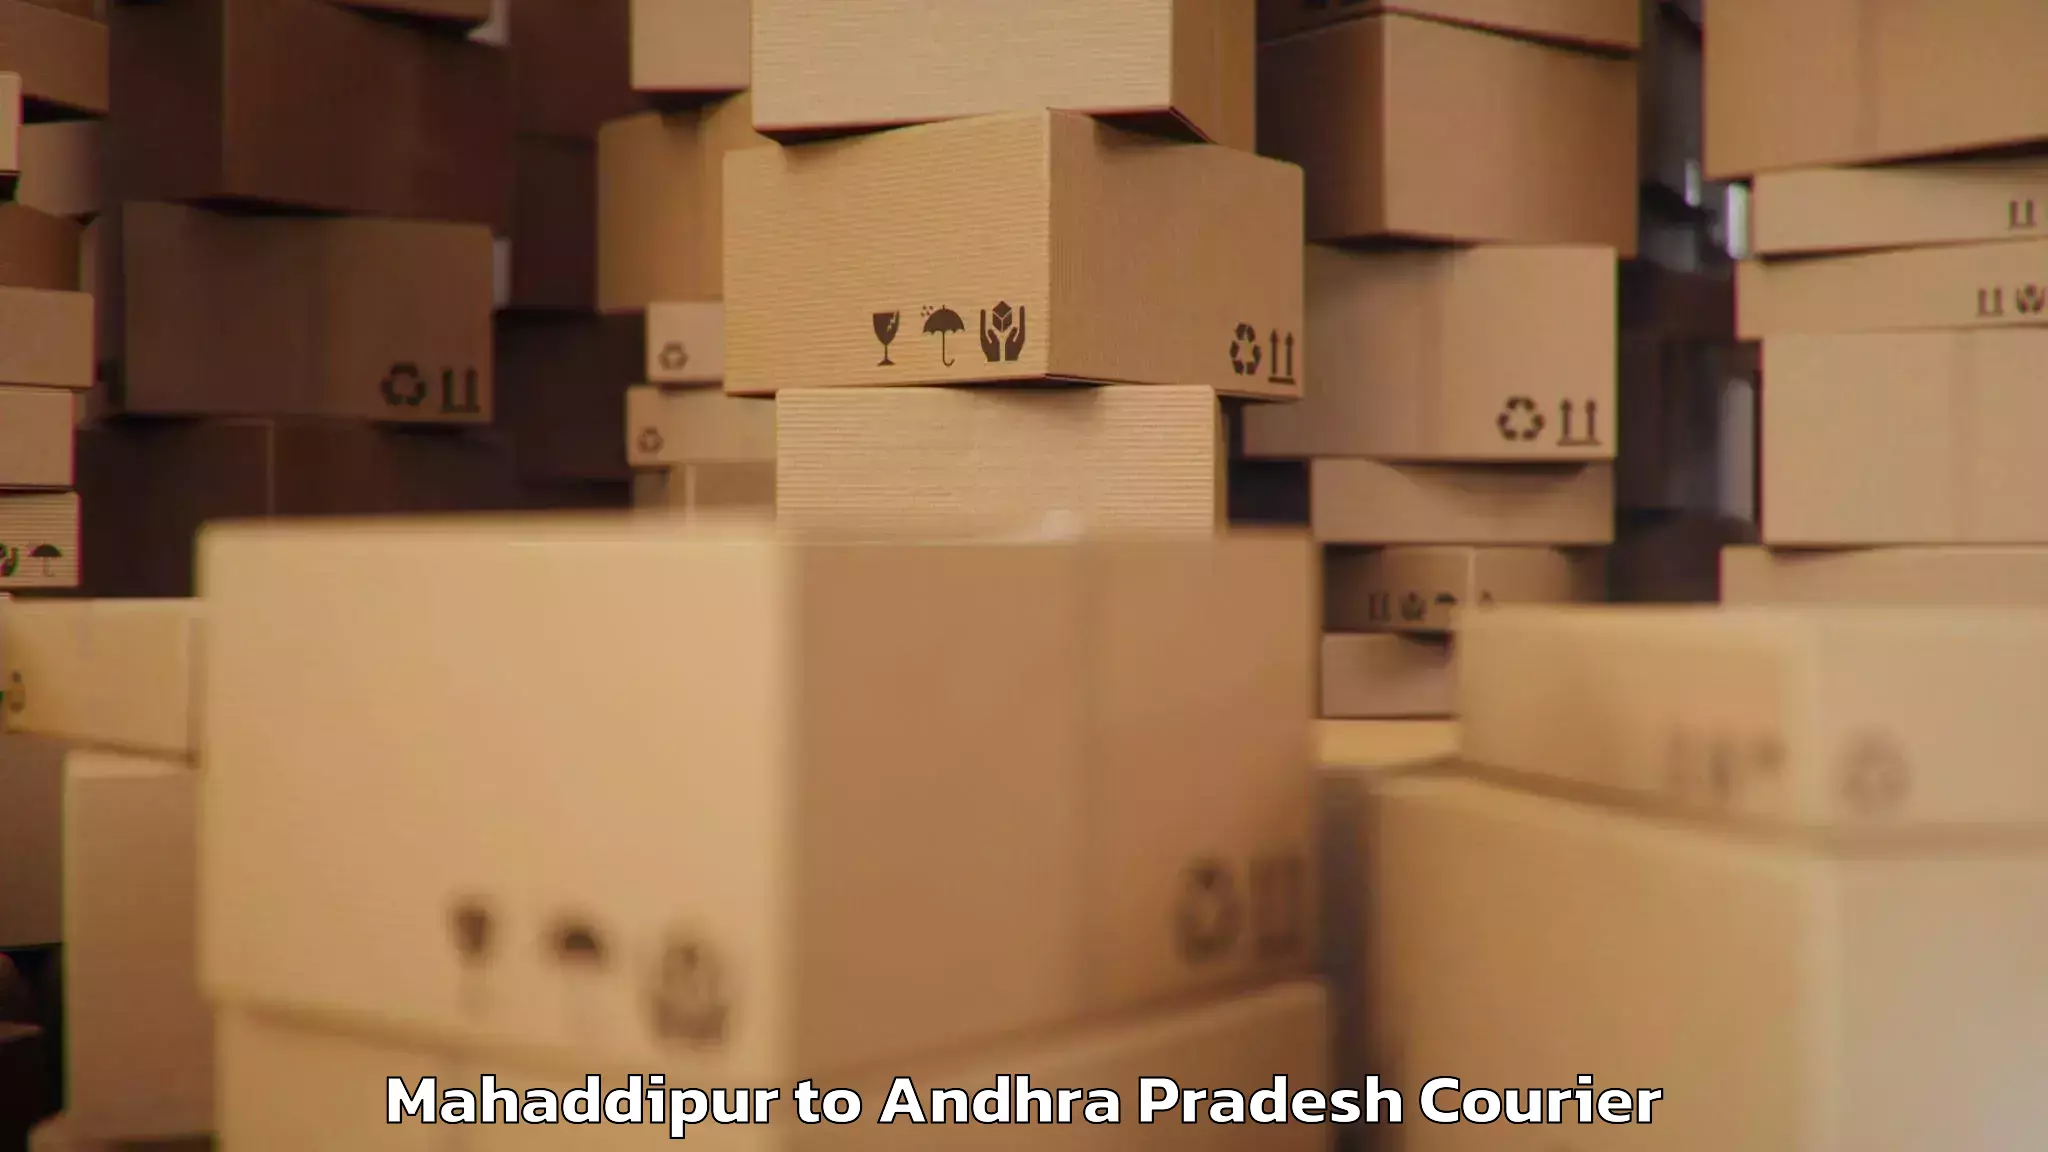 Emergency luggage shipping Mahaddipur to Srisailam